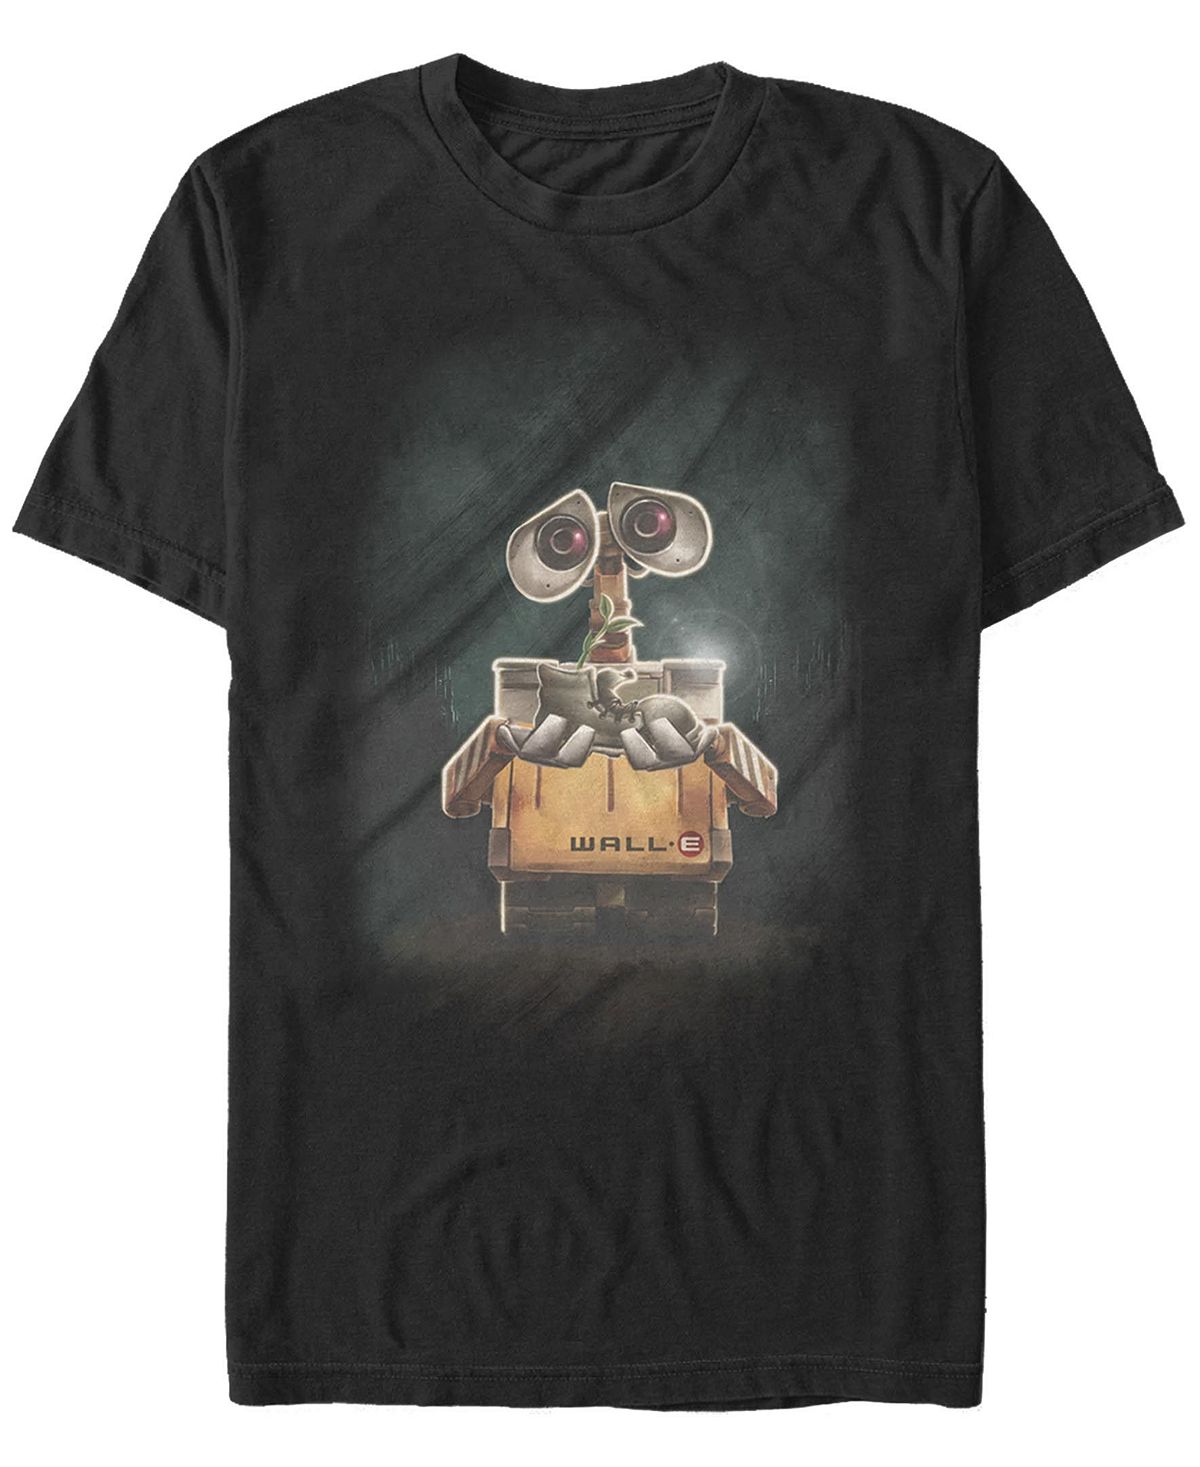 Мужская футболка wall-e с круглым вырезом и короткими рукавами Fifth Sun, черный